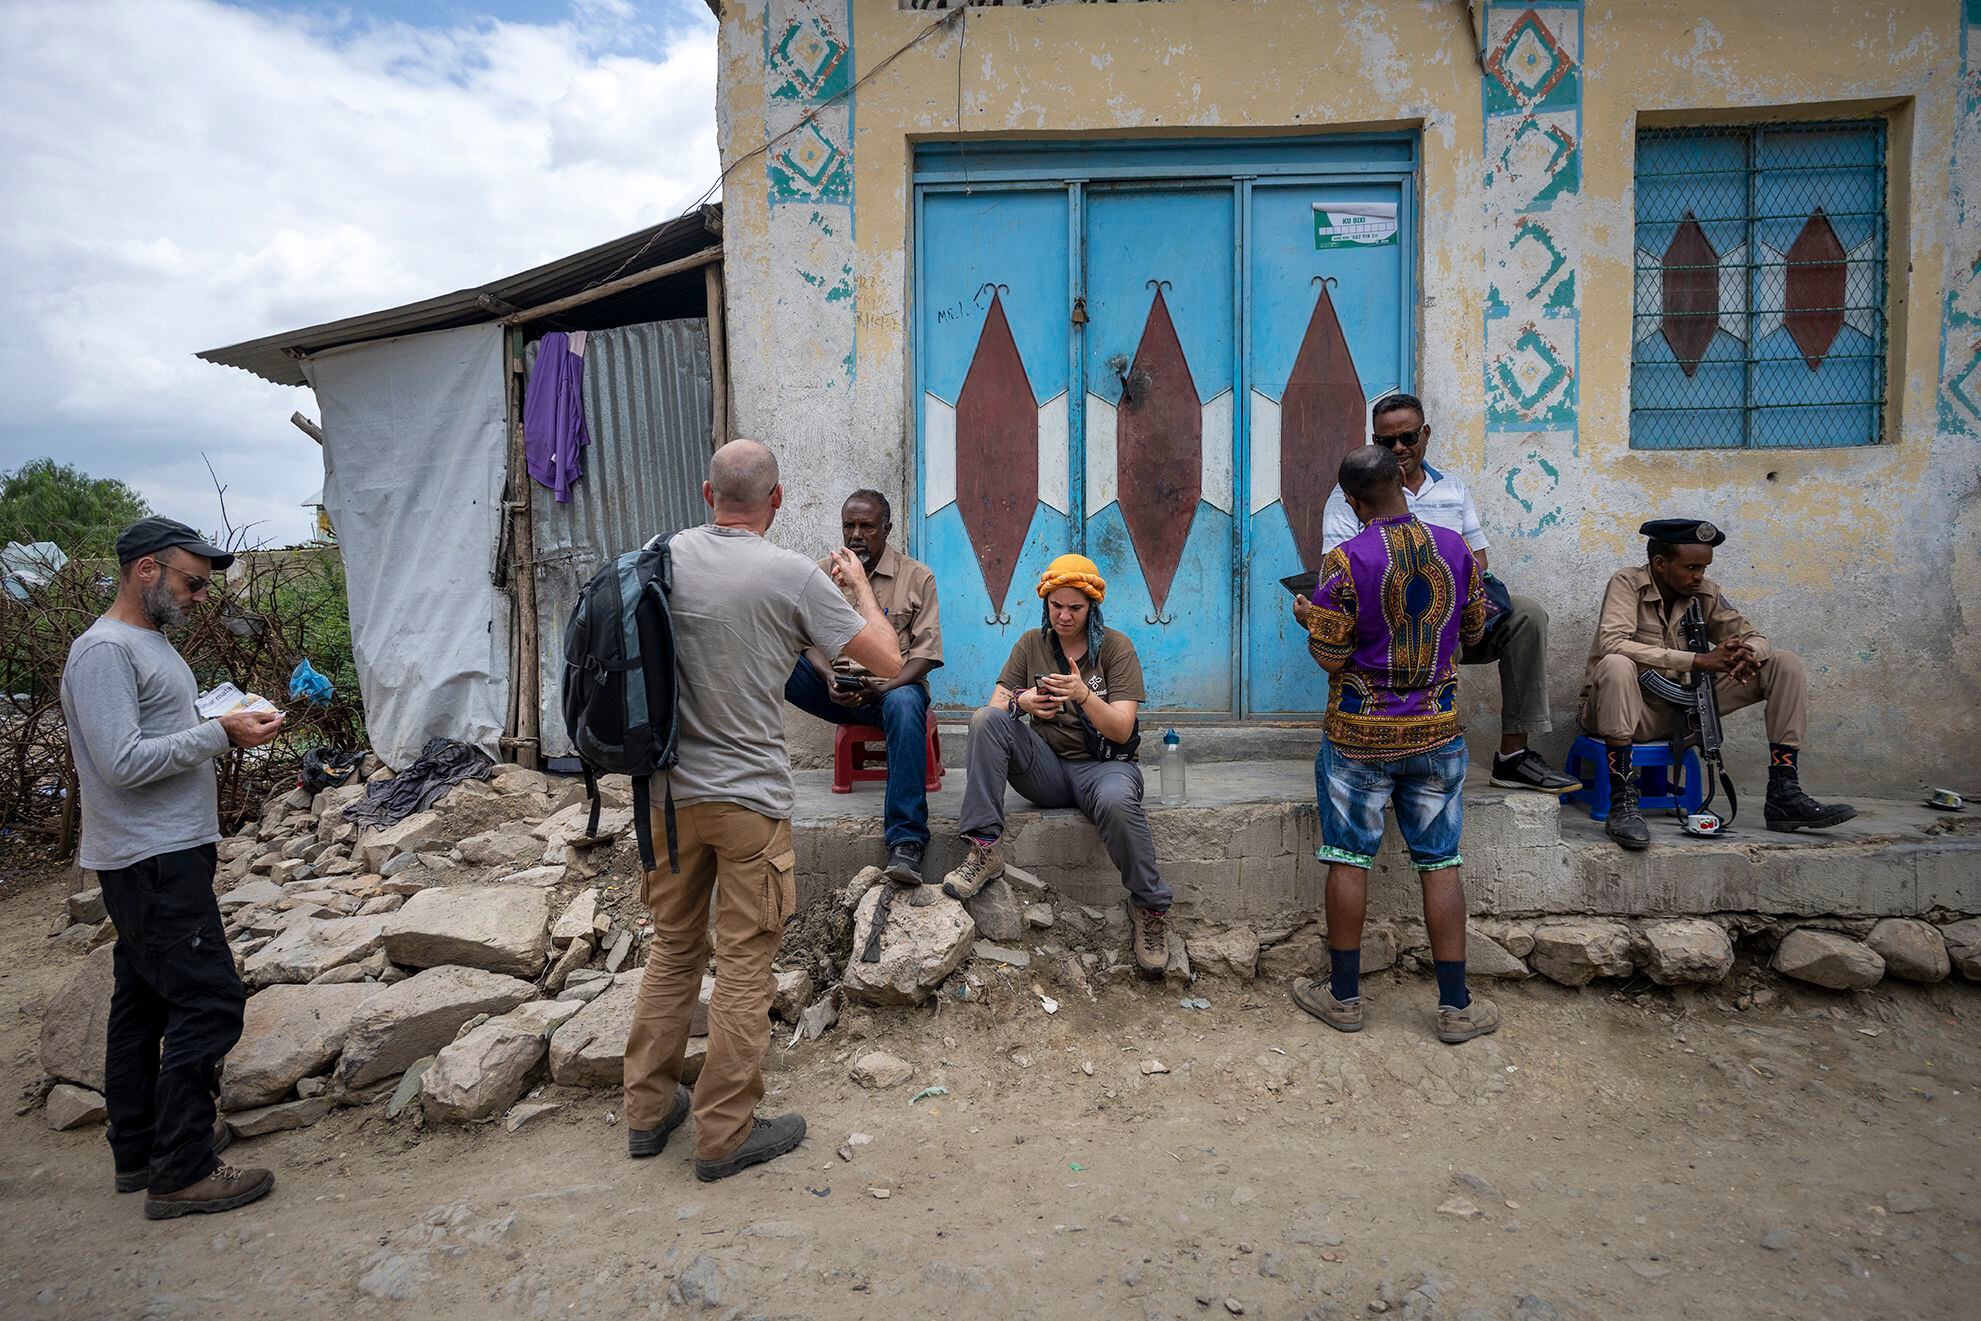 El equipo de arqueólogos del proyecto Statehorn prepara una de sus salidas de prospección en el pueblo etíope de AwBarre, en la frontera con Somalilandia.